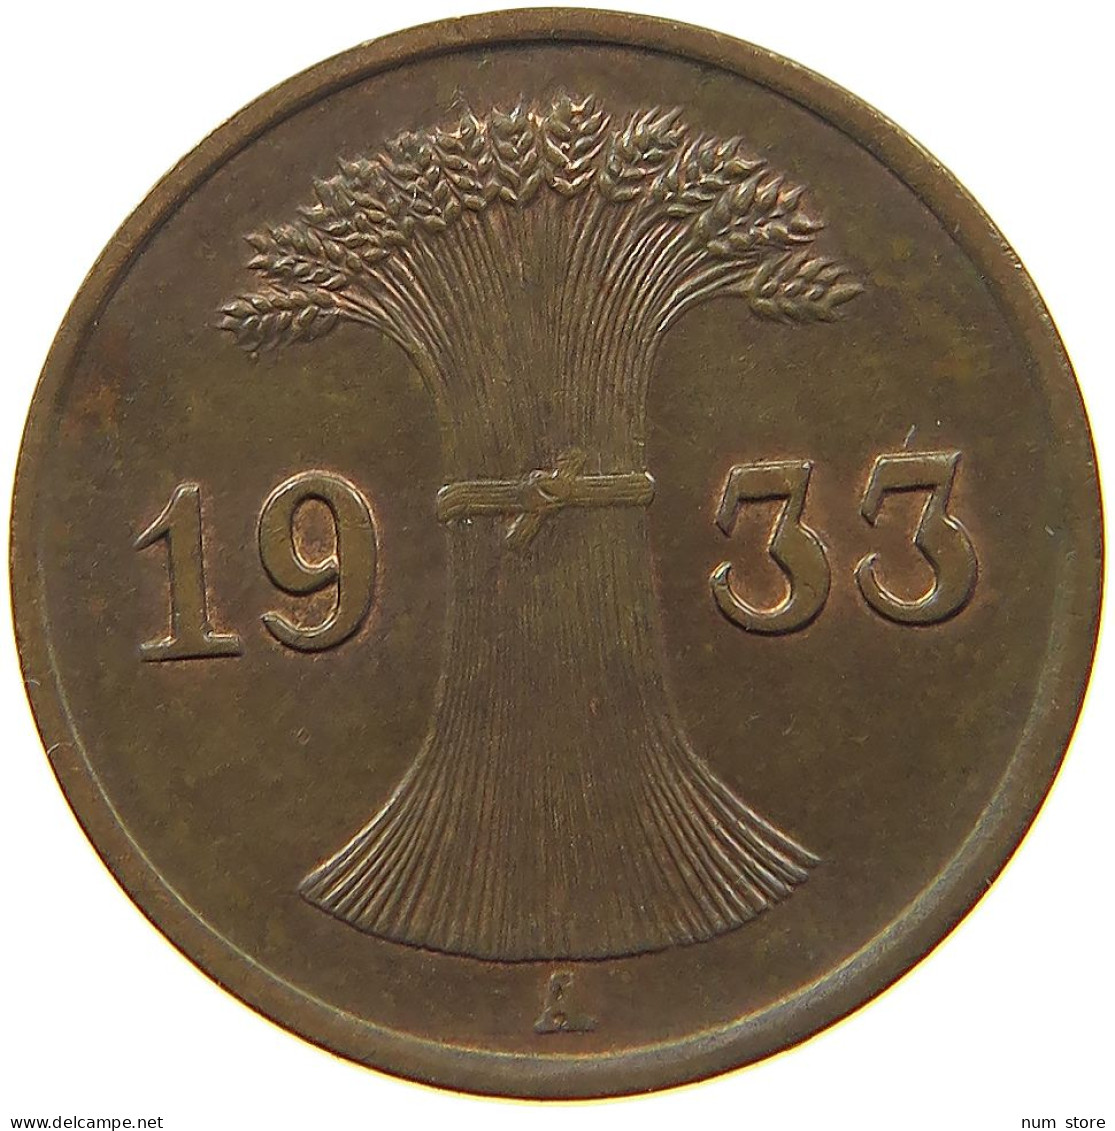 WEIMARER REPUBLIK REICHSPFENNIG 1933 A  #MA 100165 - 1 Rentenpfennig & 1 Reichspfennig